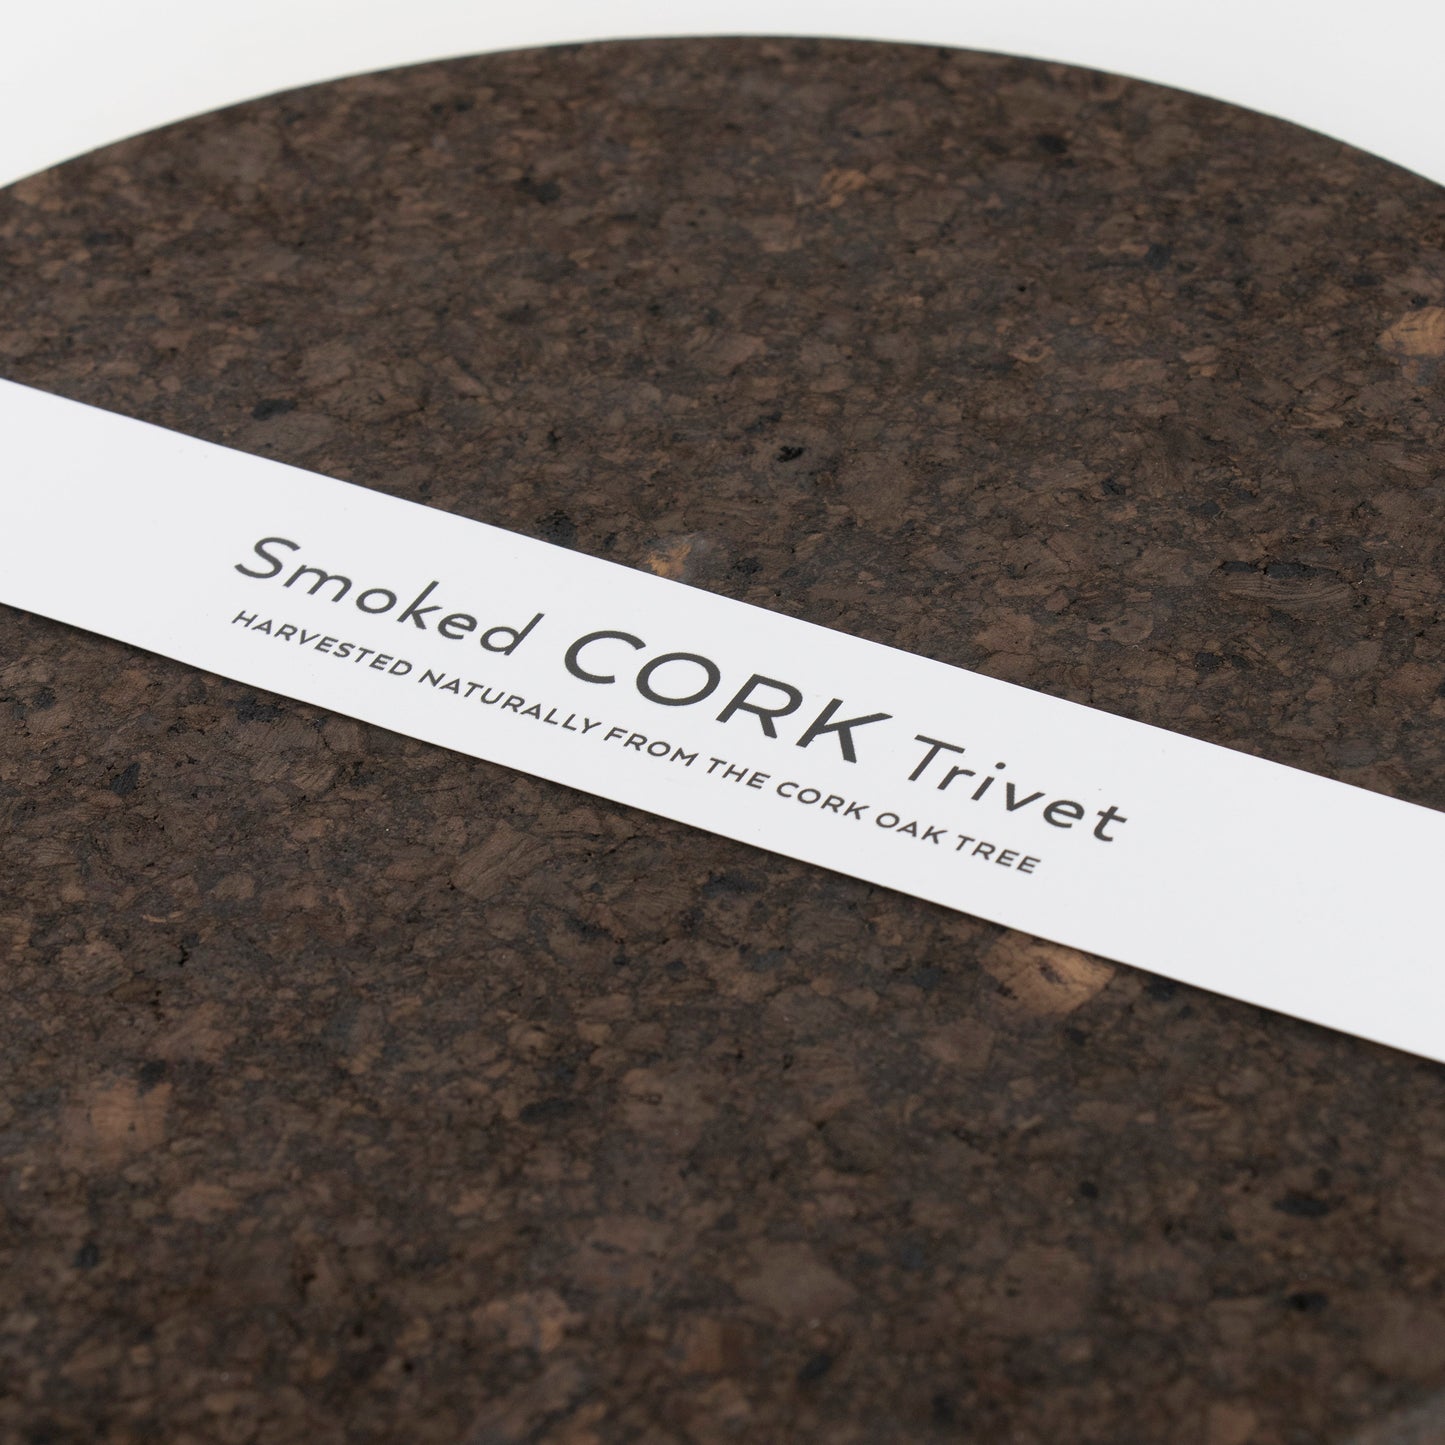 Smoked Cork Trivet | Large